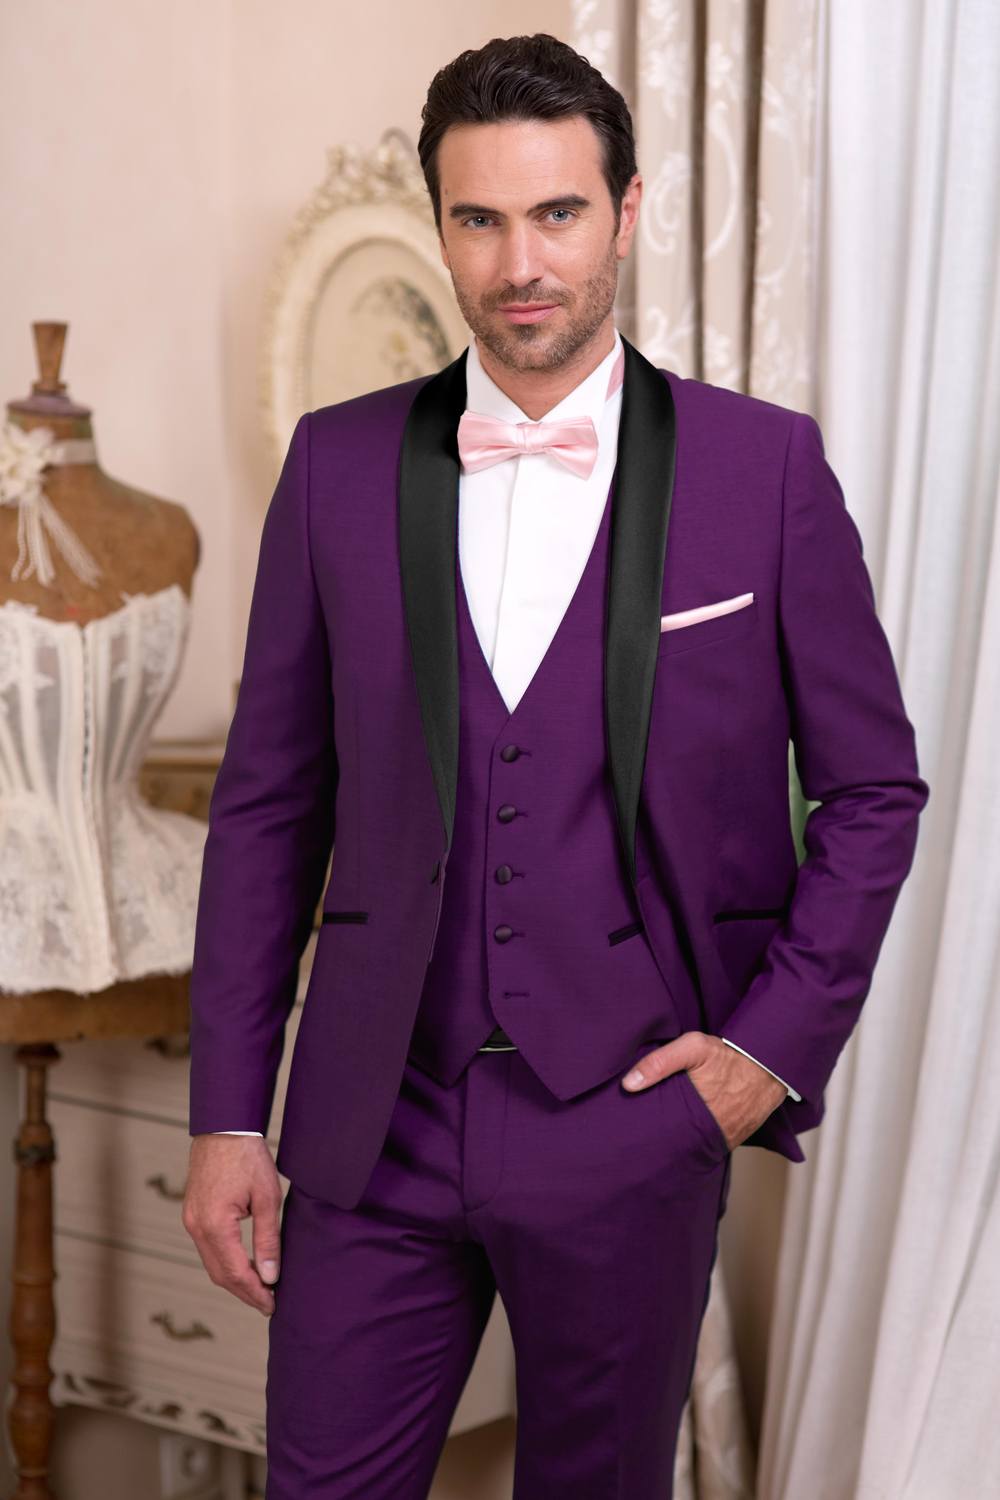 Élégant gilet homme à motif païen or violet costume de mariage royal